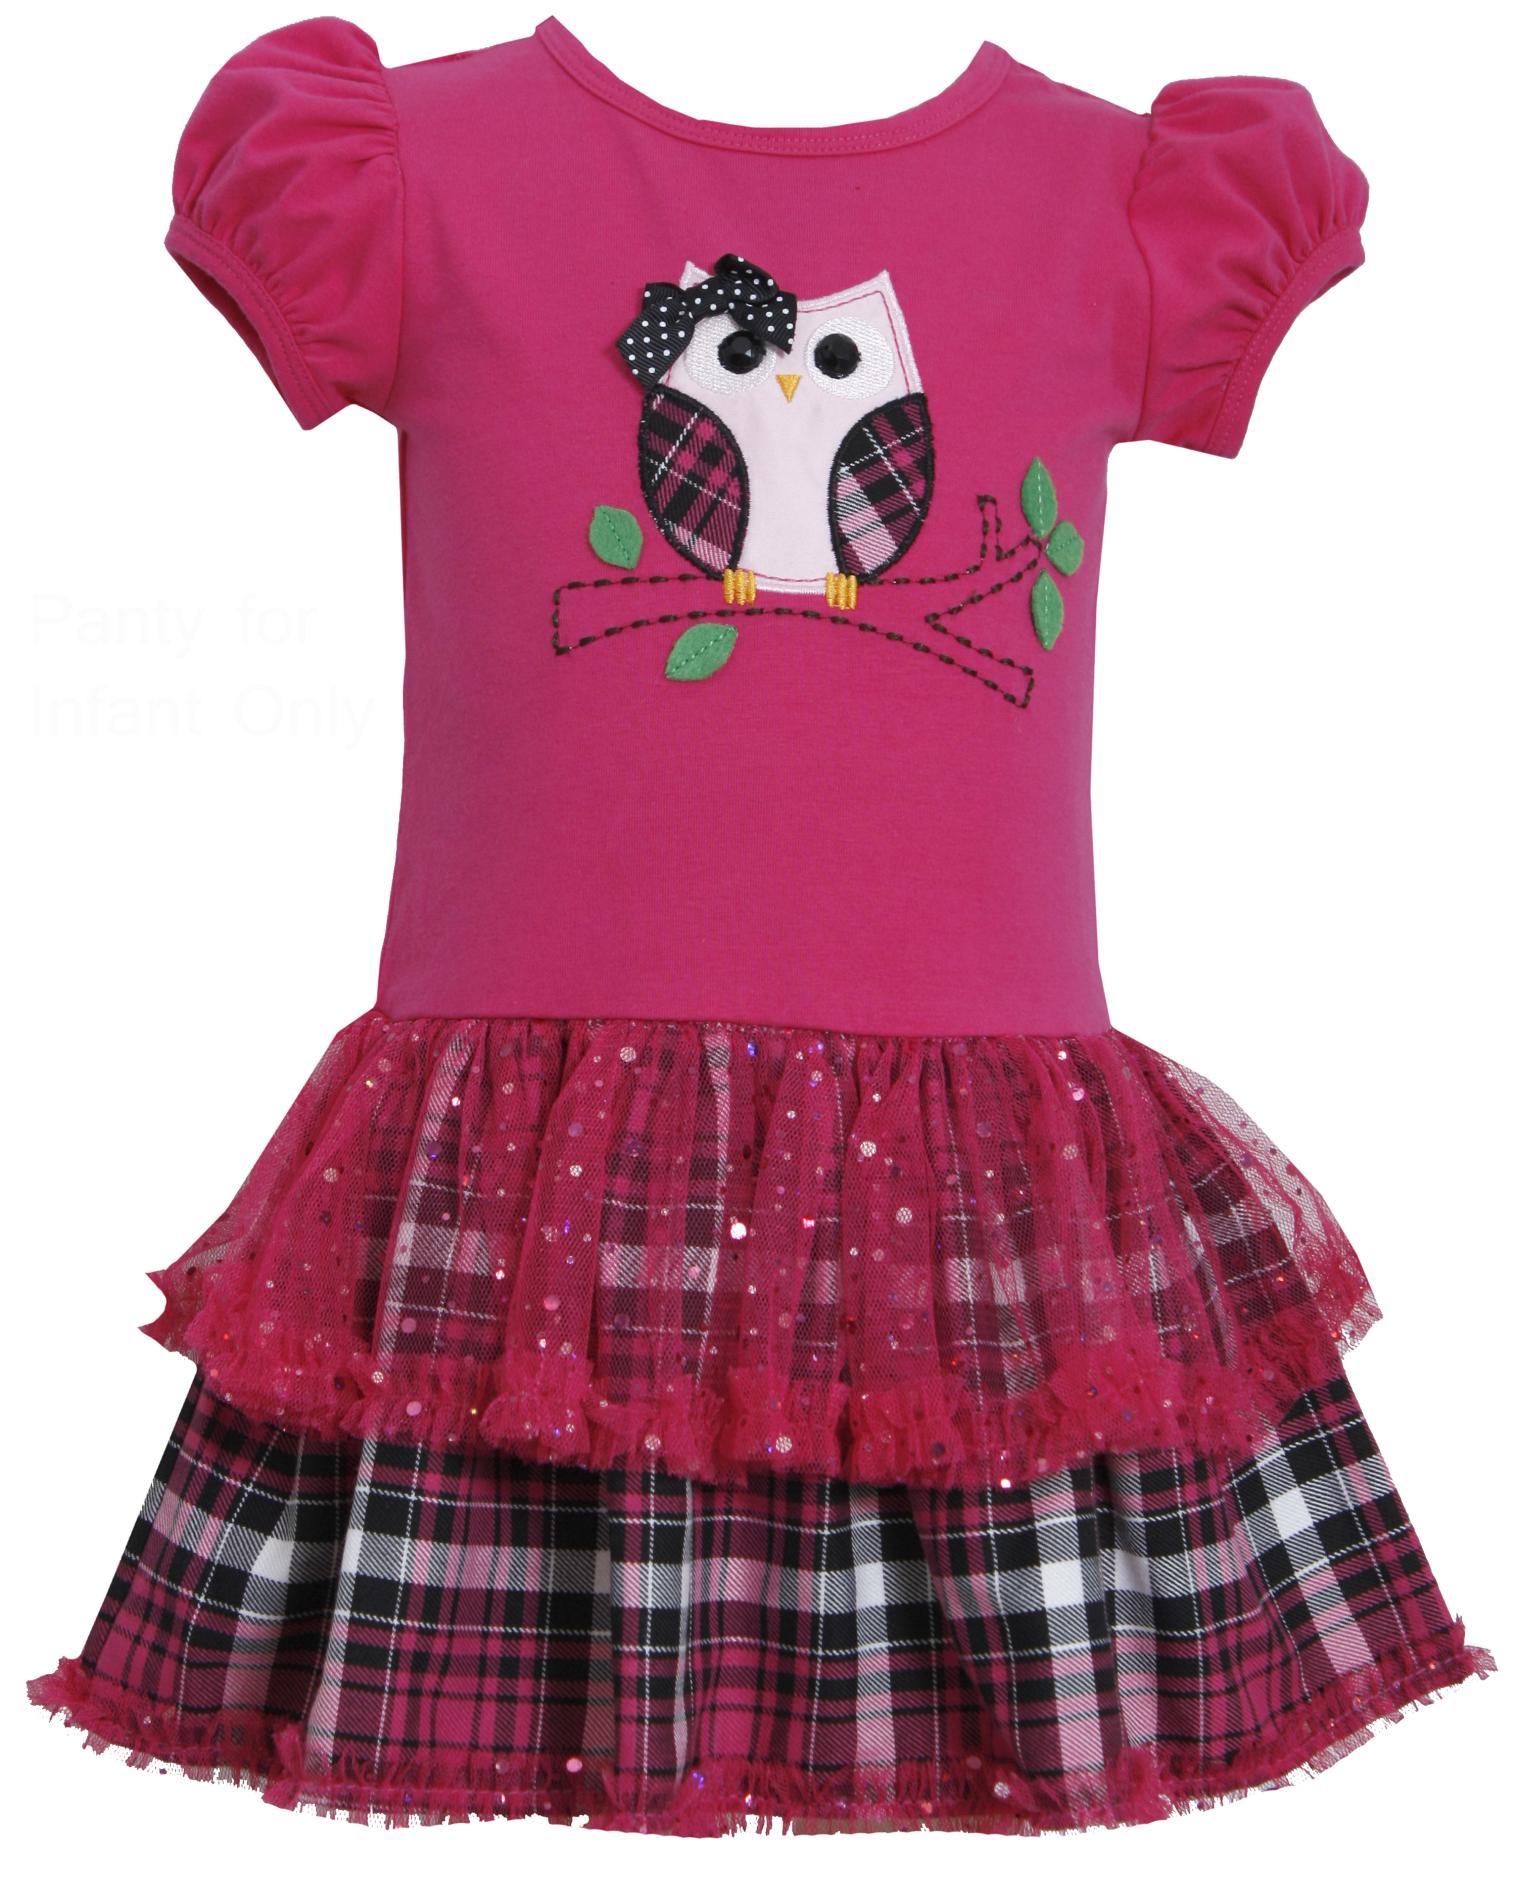 Ashley Ann Infant & Toddler Girl's Casual Dress - Owl